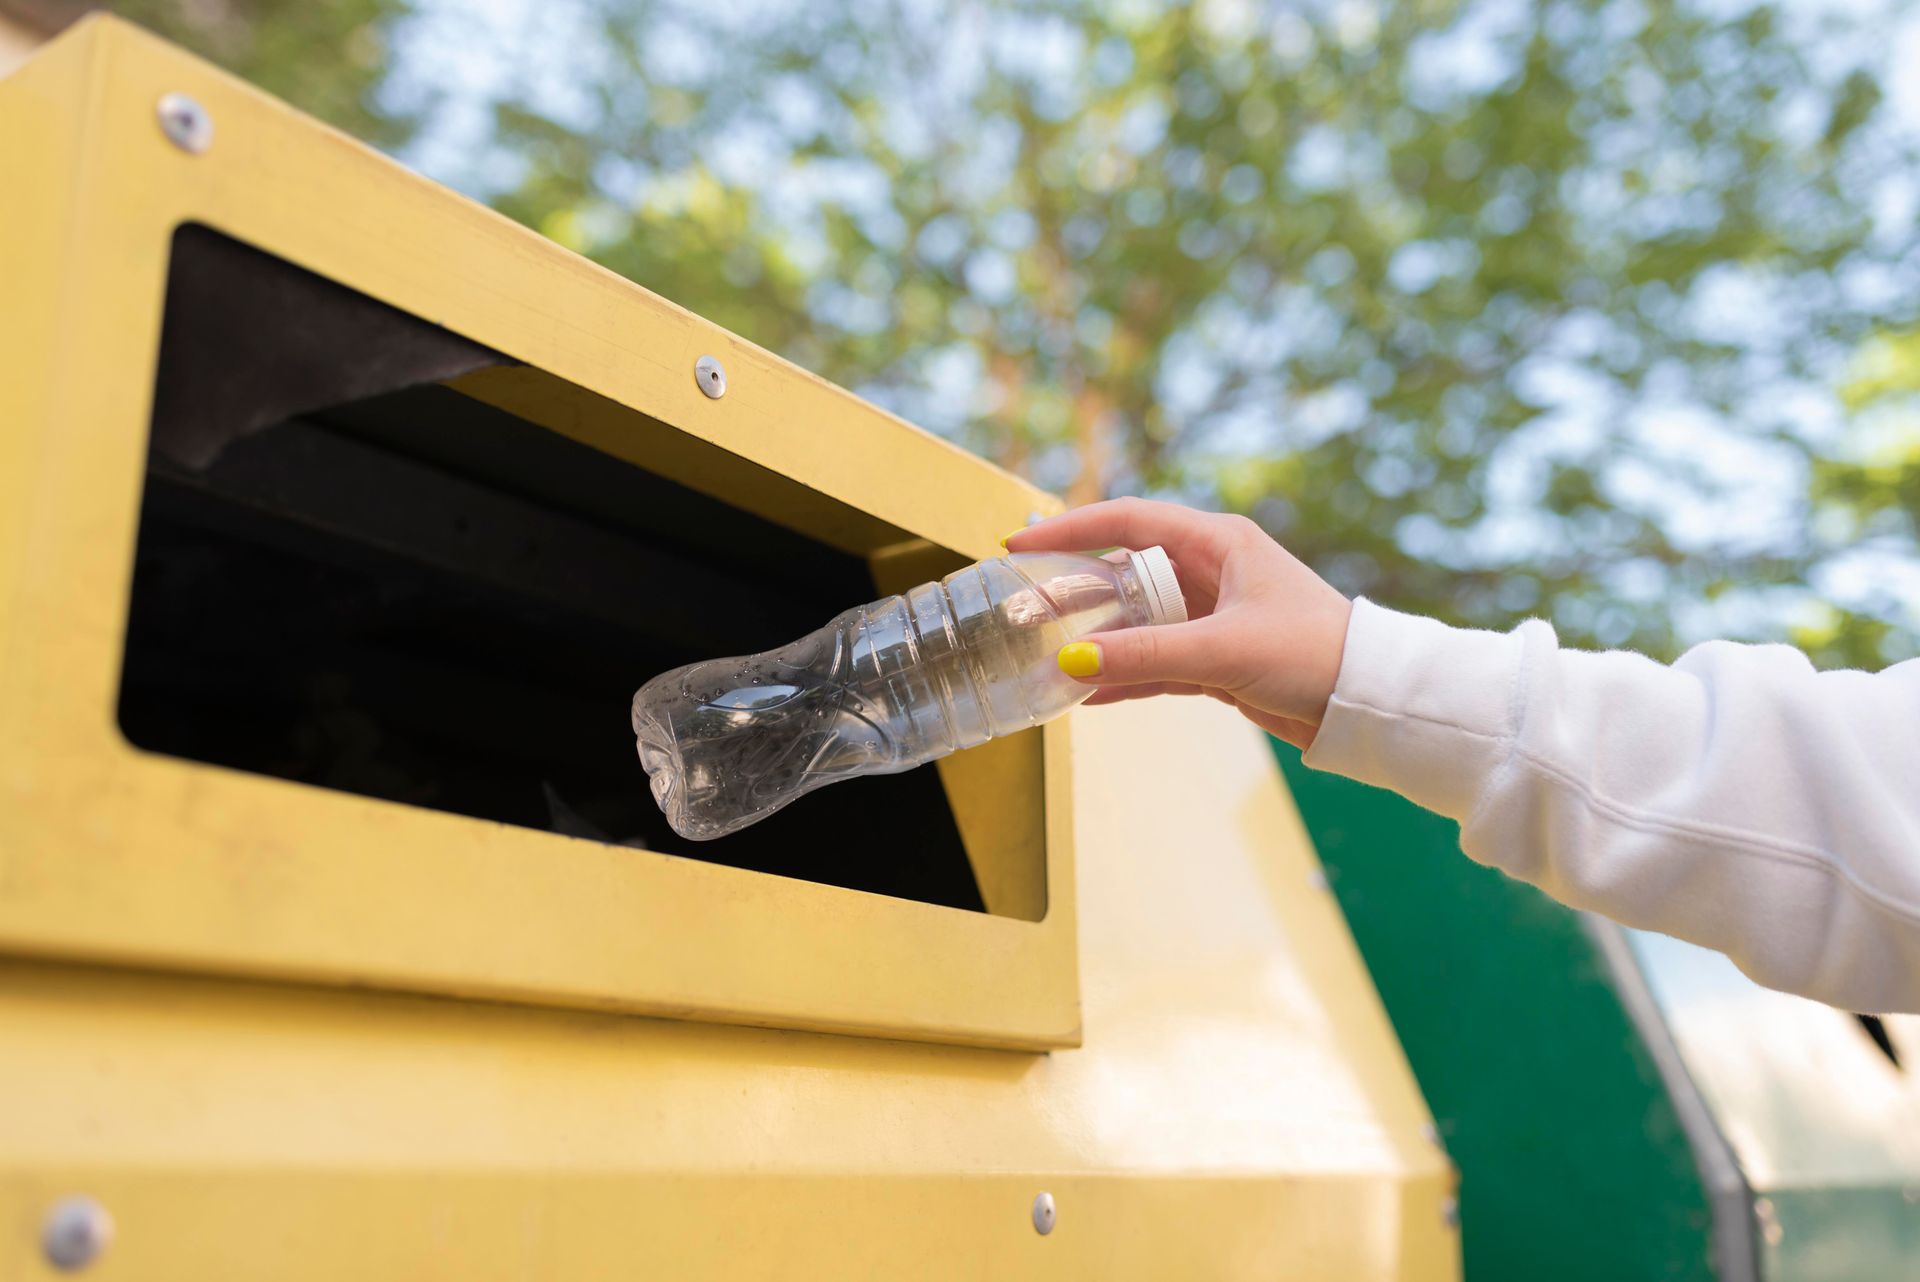 Mujer tirando una botella en un servicio de recolección de basura sostenible